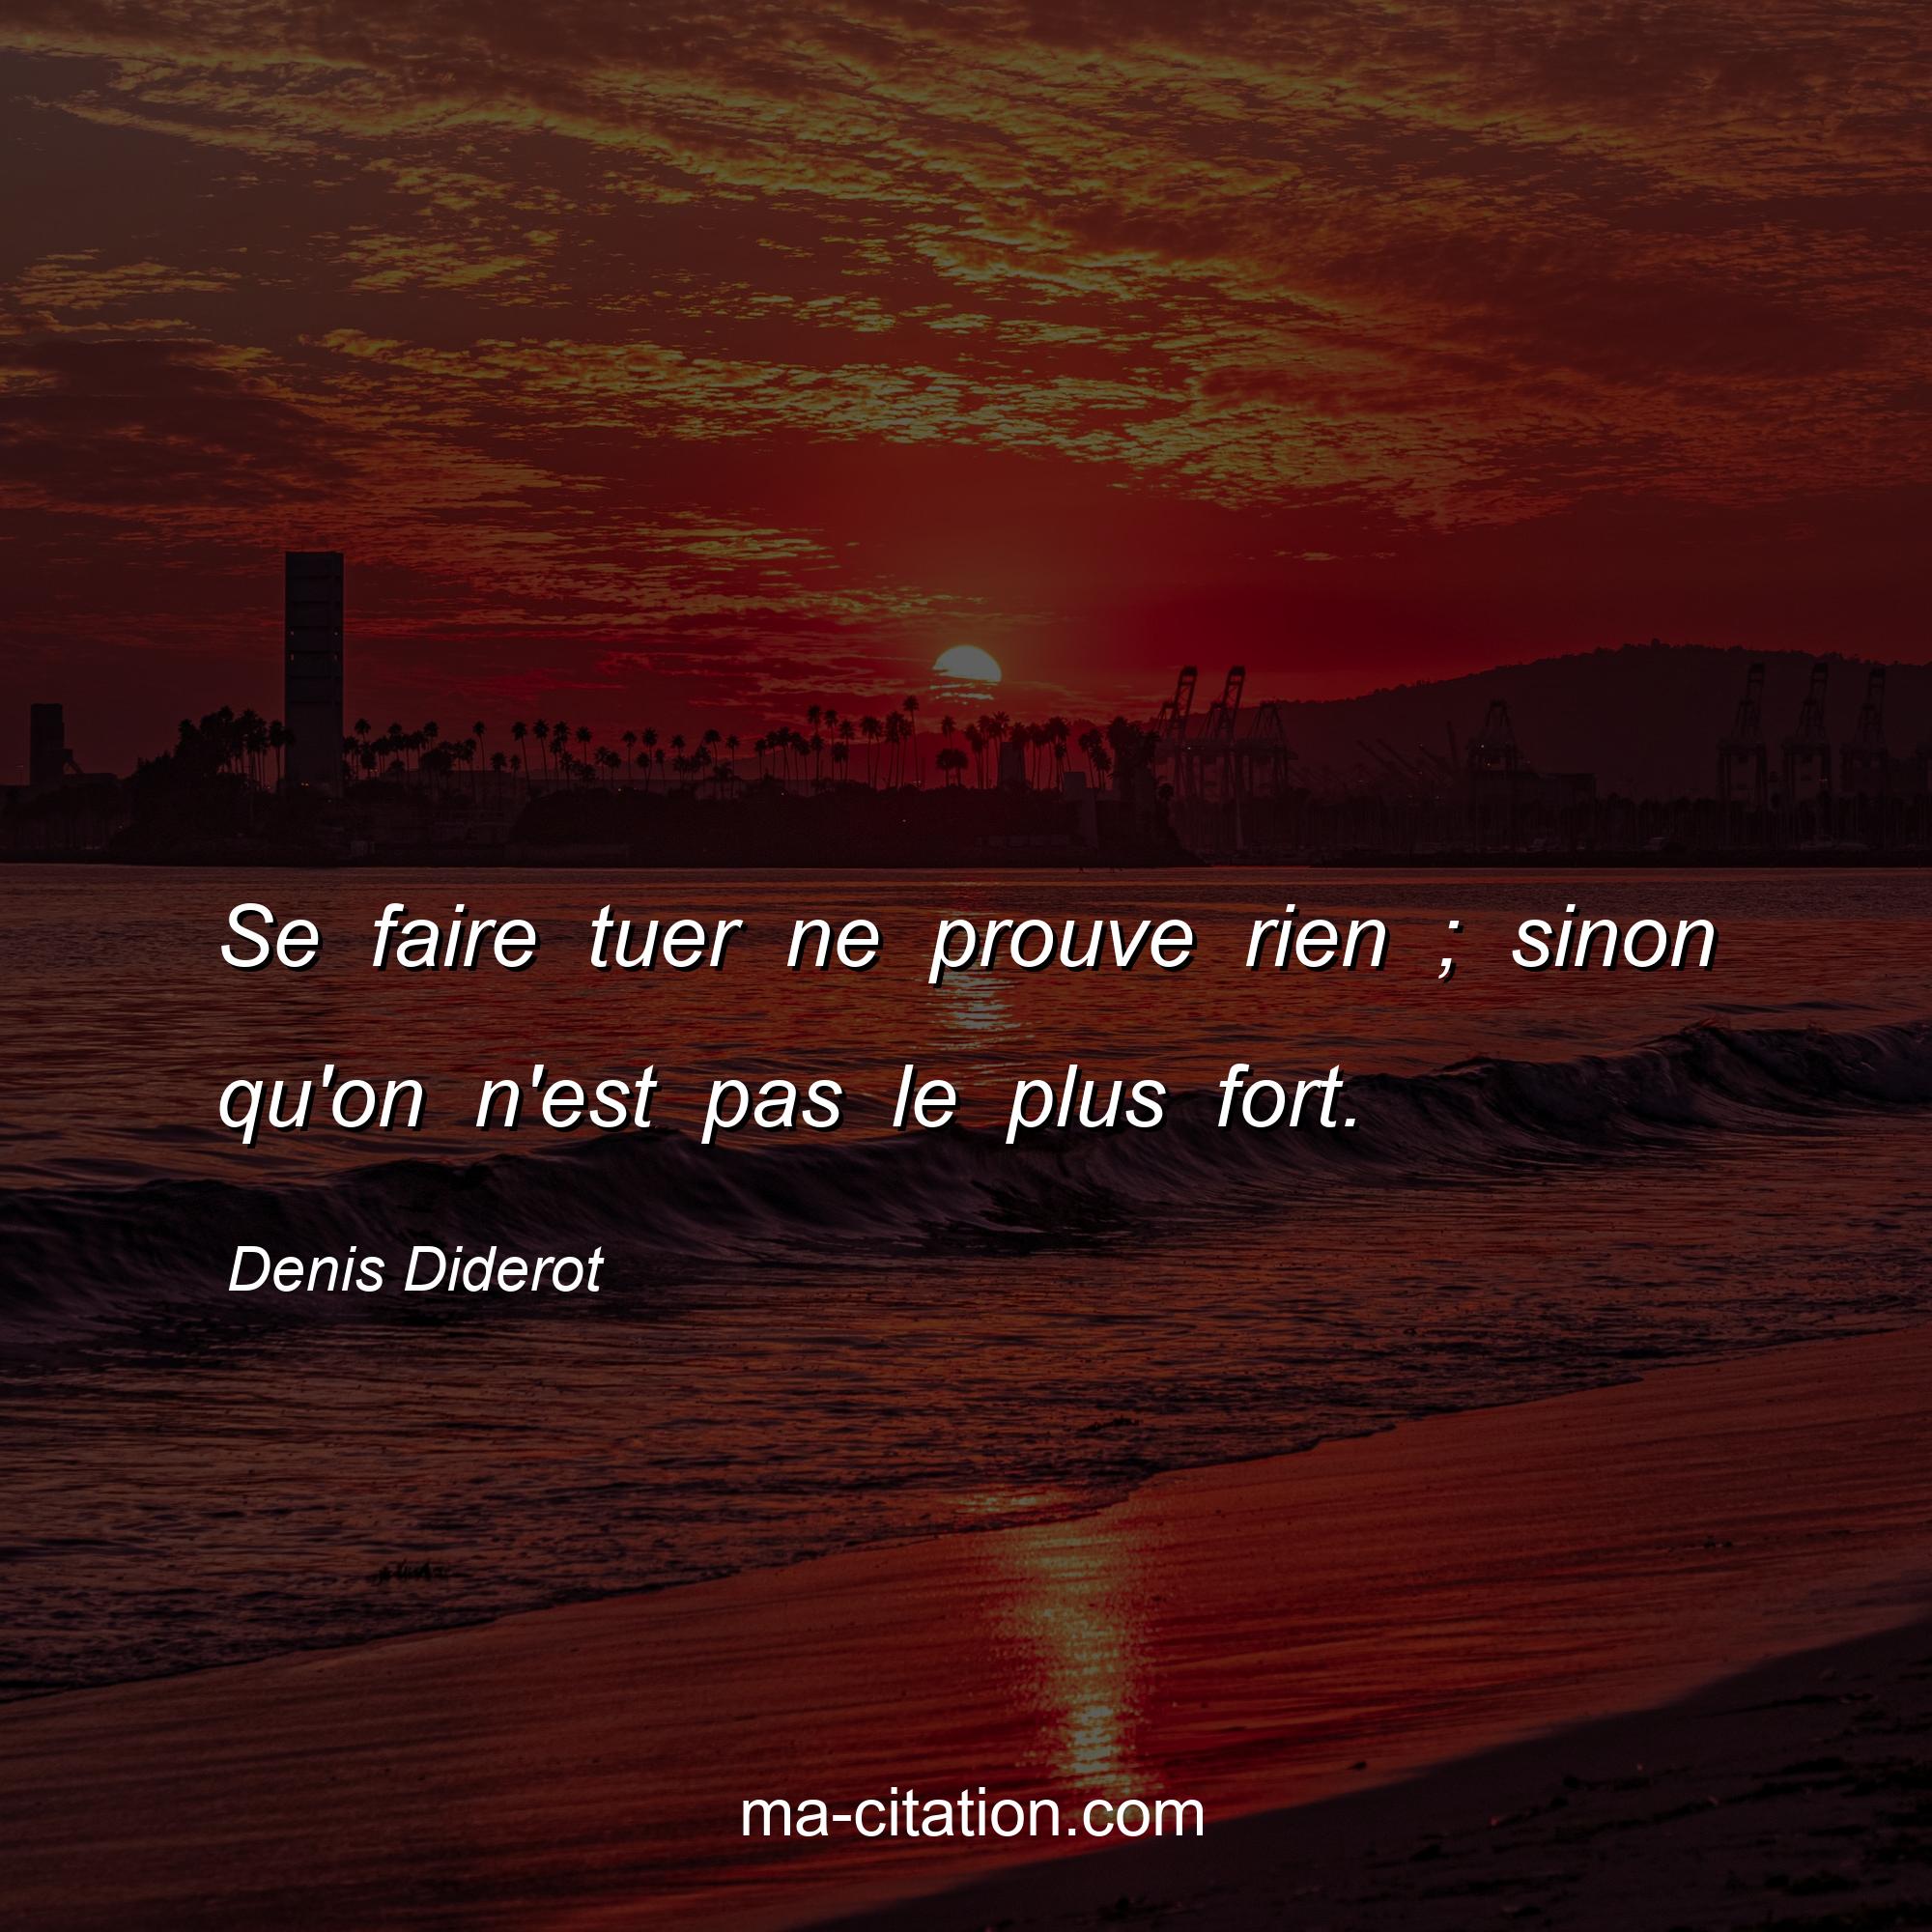 Denis Diderot : Se faire tuer ne prouve rien ; sinon qu'on n'est pas le plus fort.